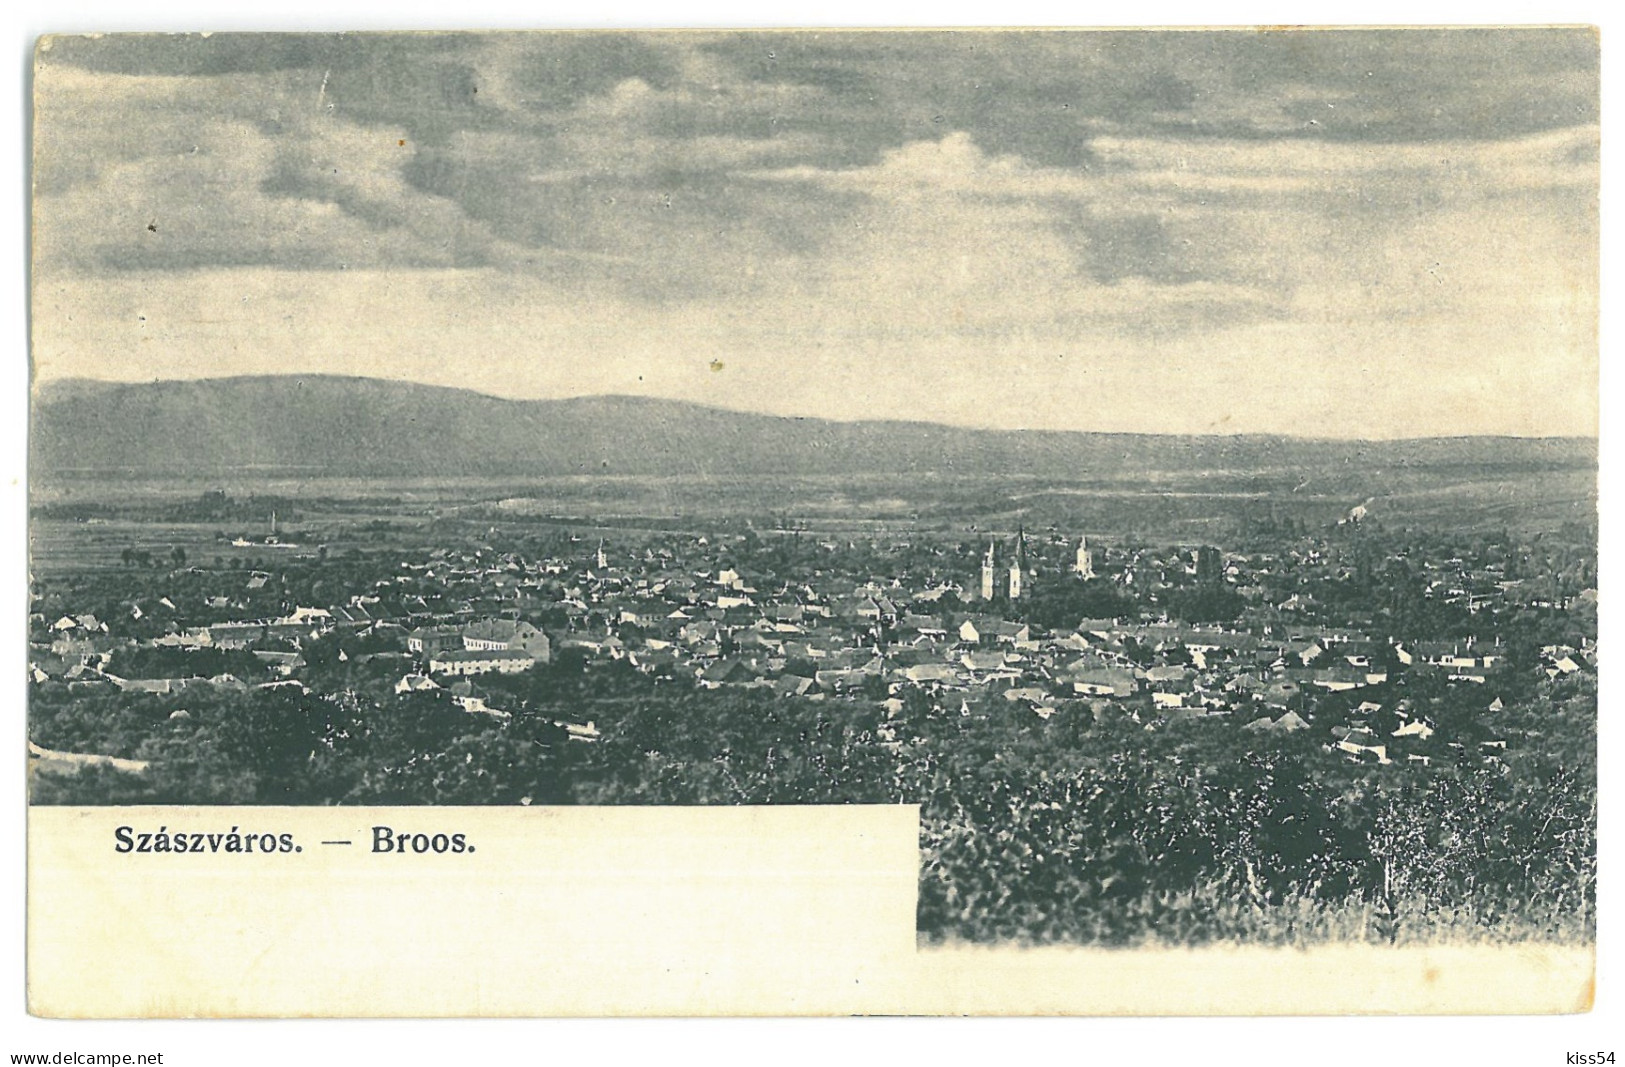 RO 35 - 23263 ORASTIE, Hunedoara, Panorama,  Romania - Old Postcard - Used - 1907 - Roumanie